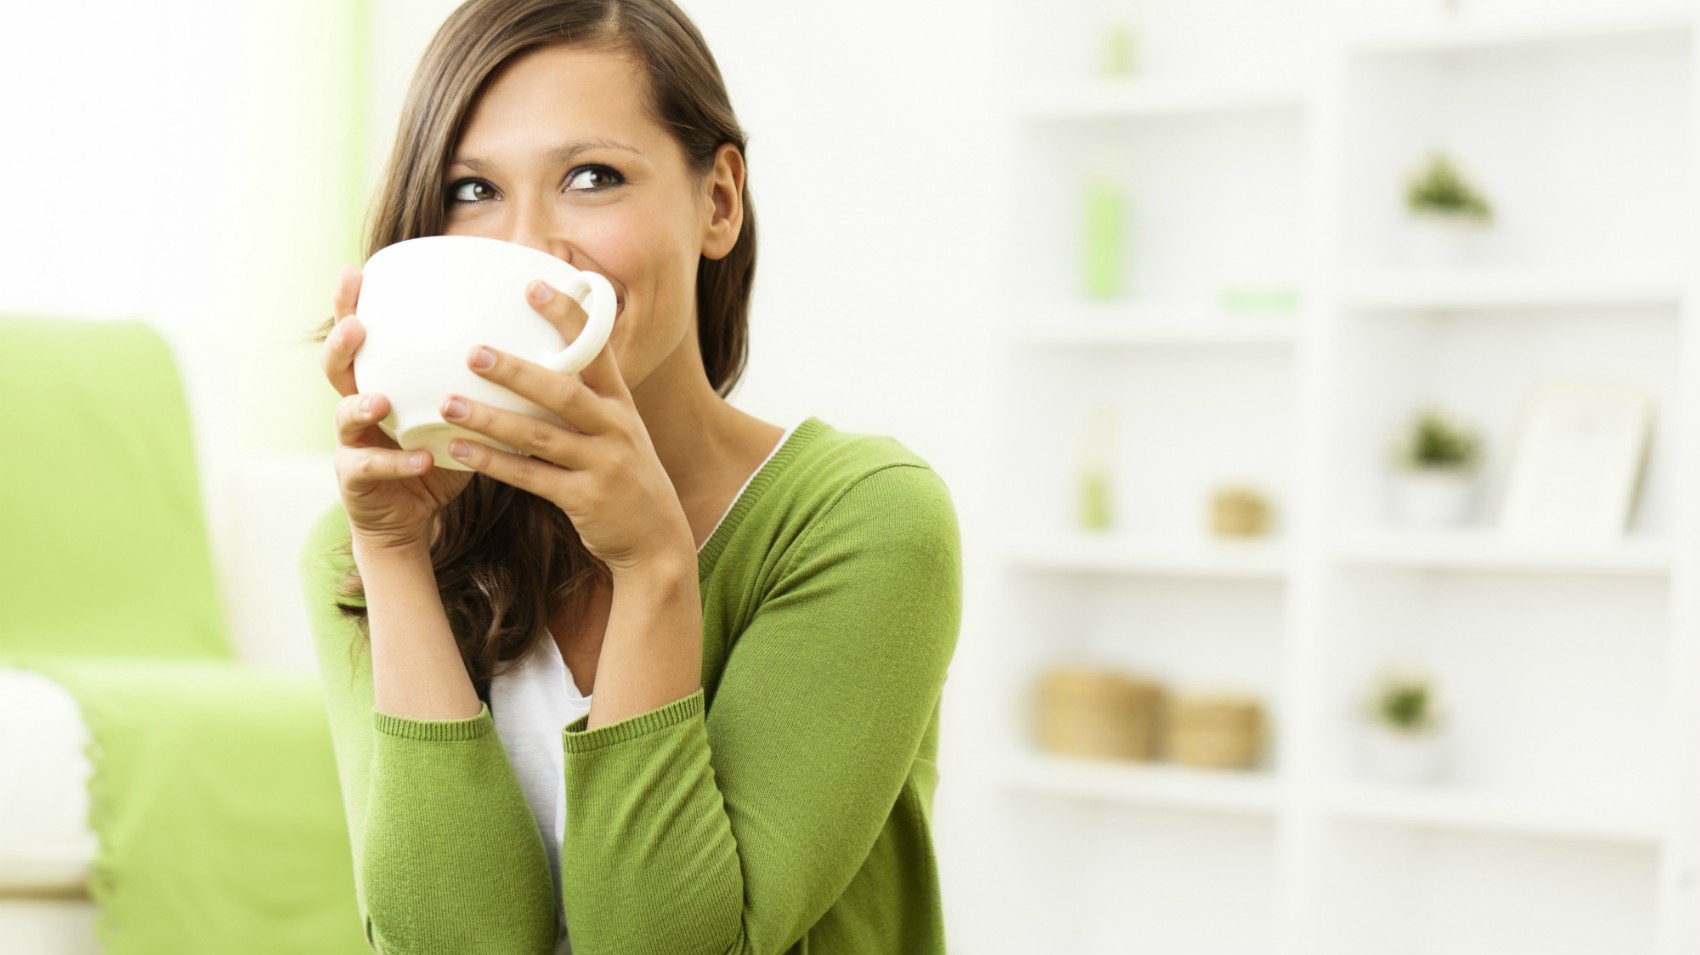 Il caffè verde che fa dimagrire: come si fa e cosa sapere